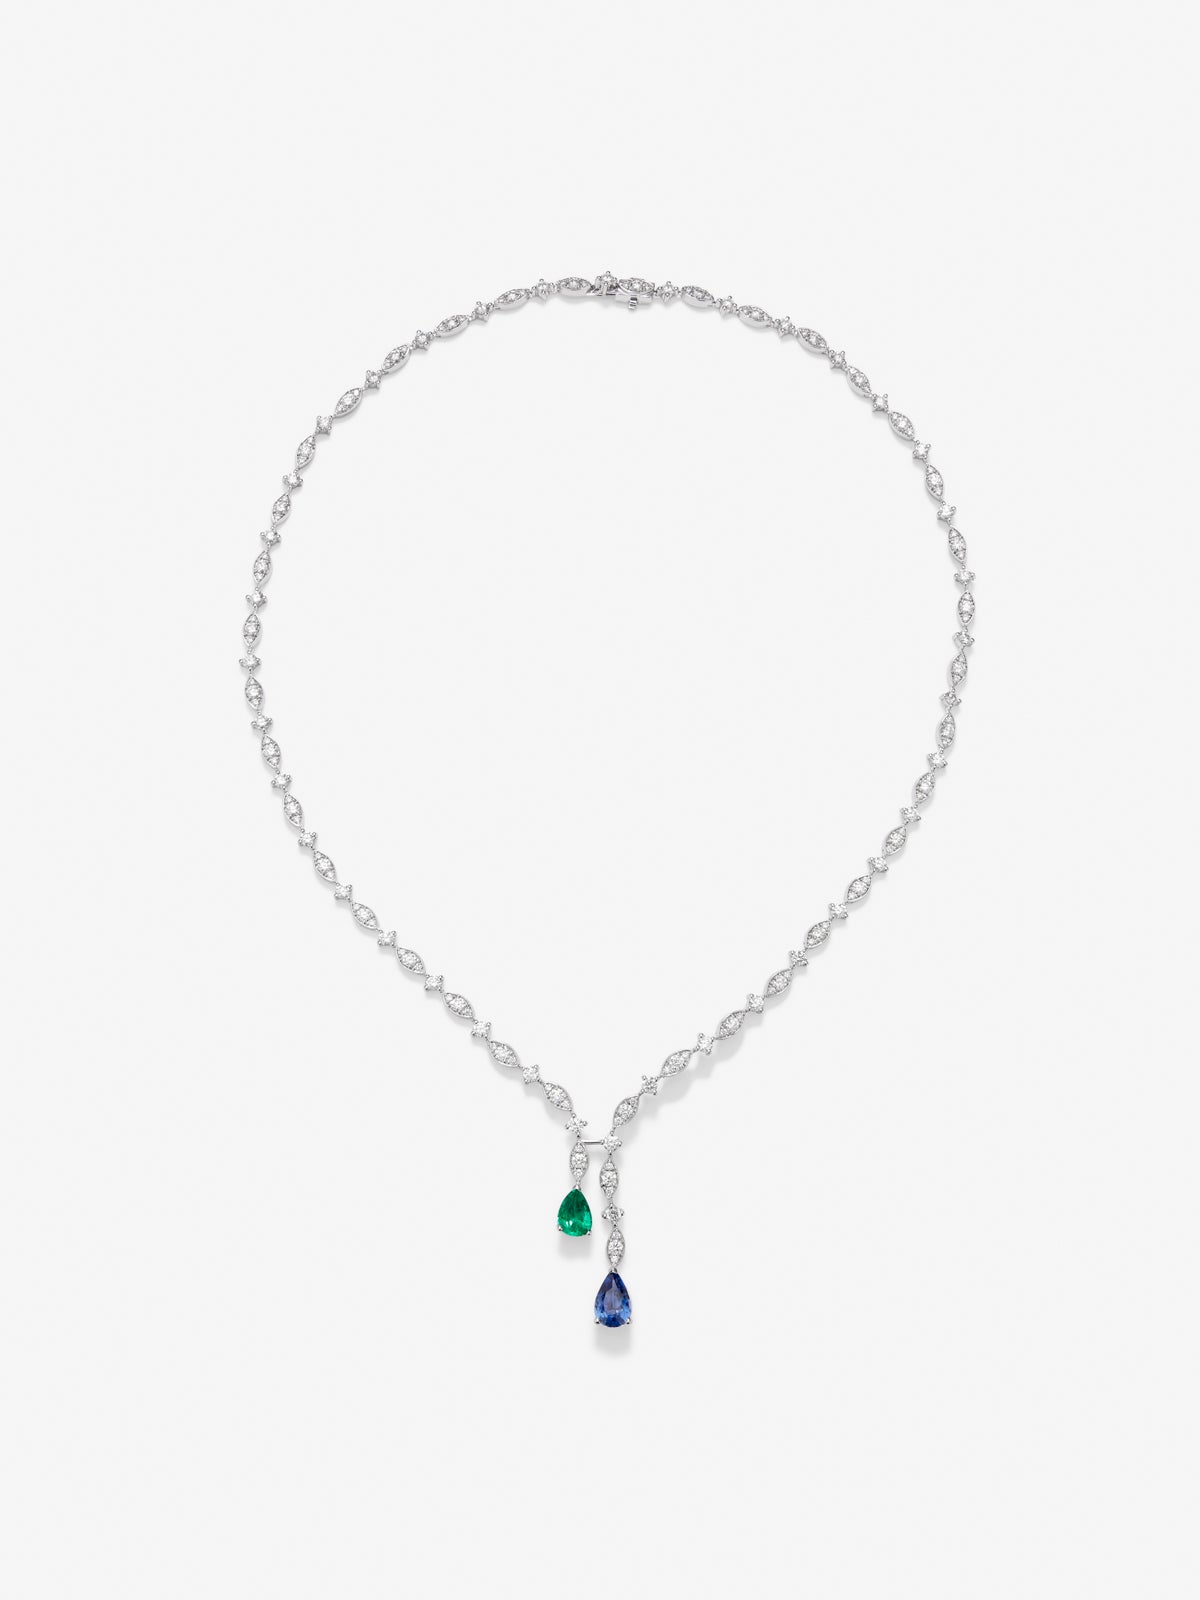 Collar de oro blanco de 18K con zafiro azul intenso en talla pera de 1,76 cts, esmeralda verde en talla pera de 0,96 cts y diamantes en talla brillante de 6,48 cts